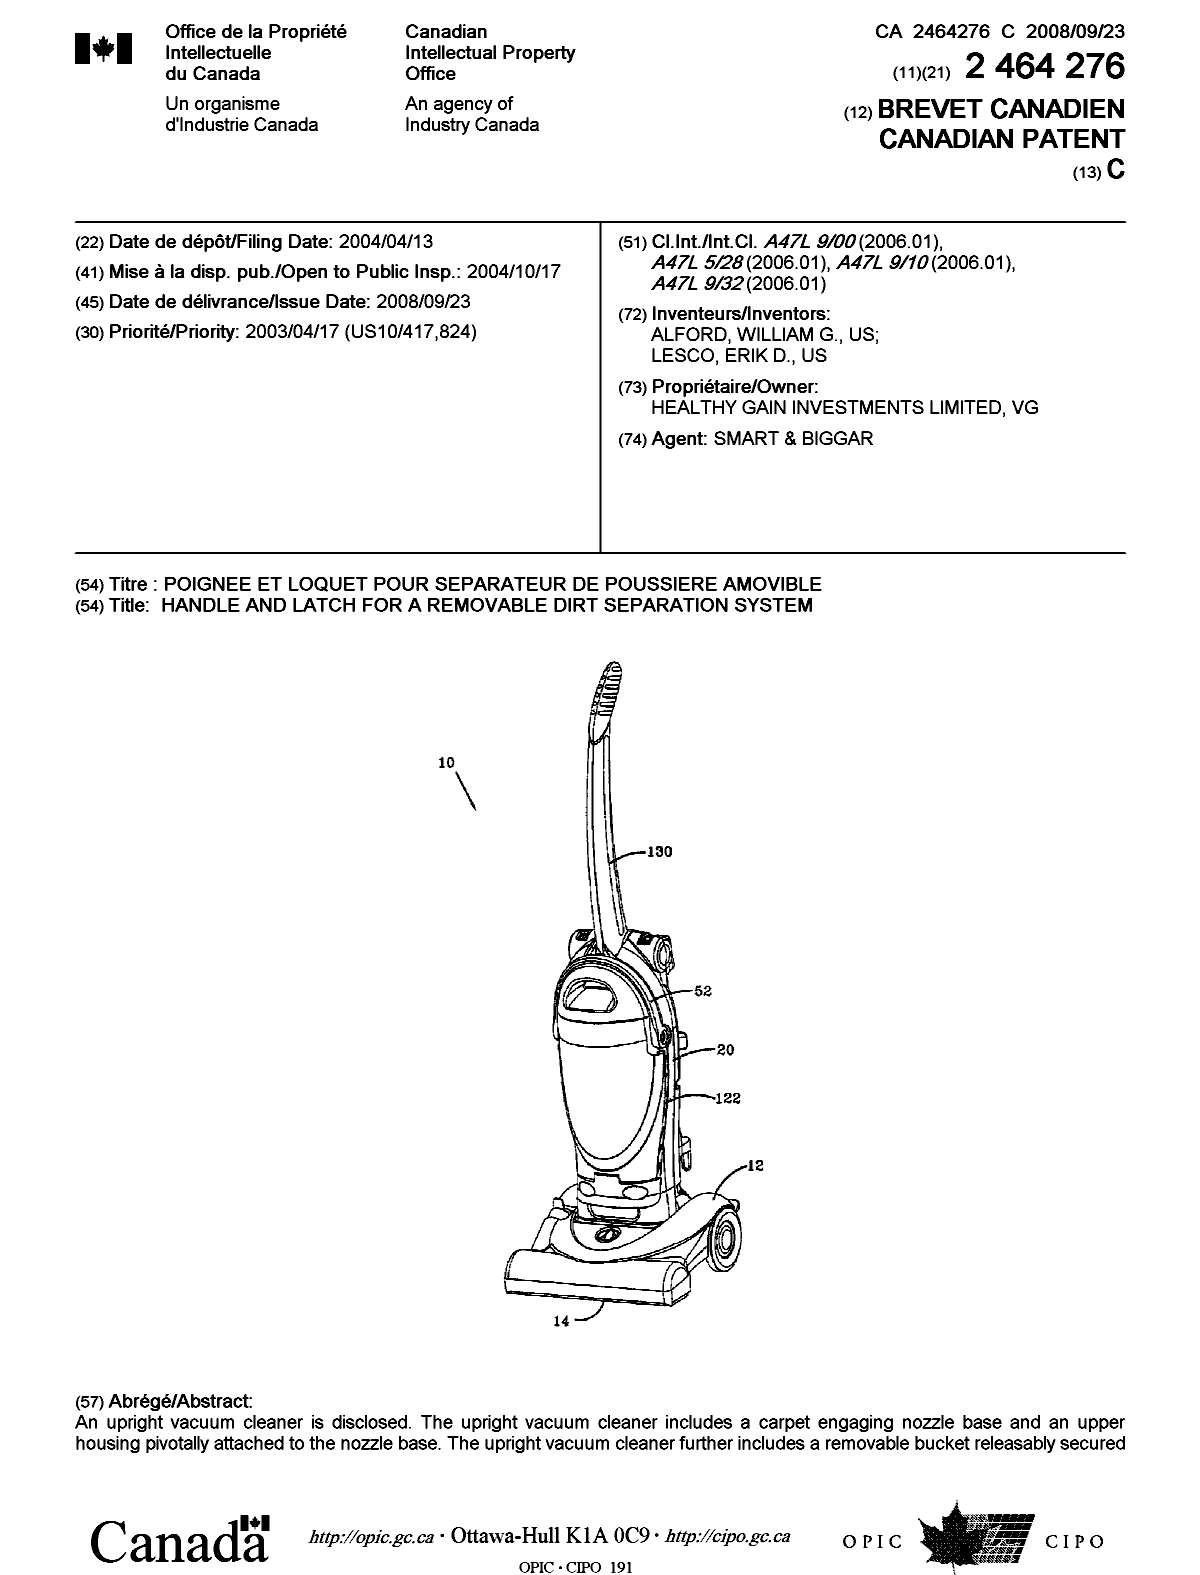 Document de brevet canadien 2464276. Page couverture 20080912. Image 1 de 2